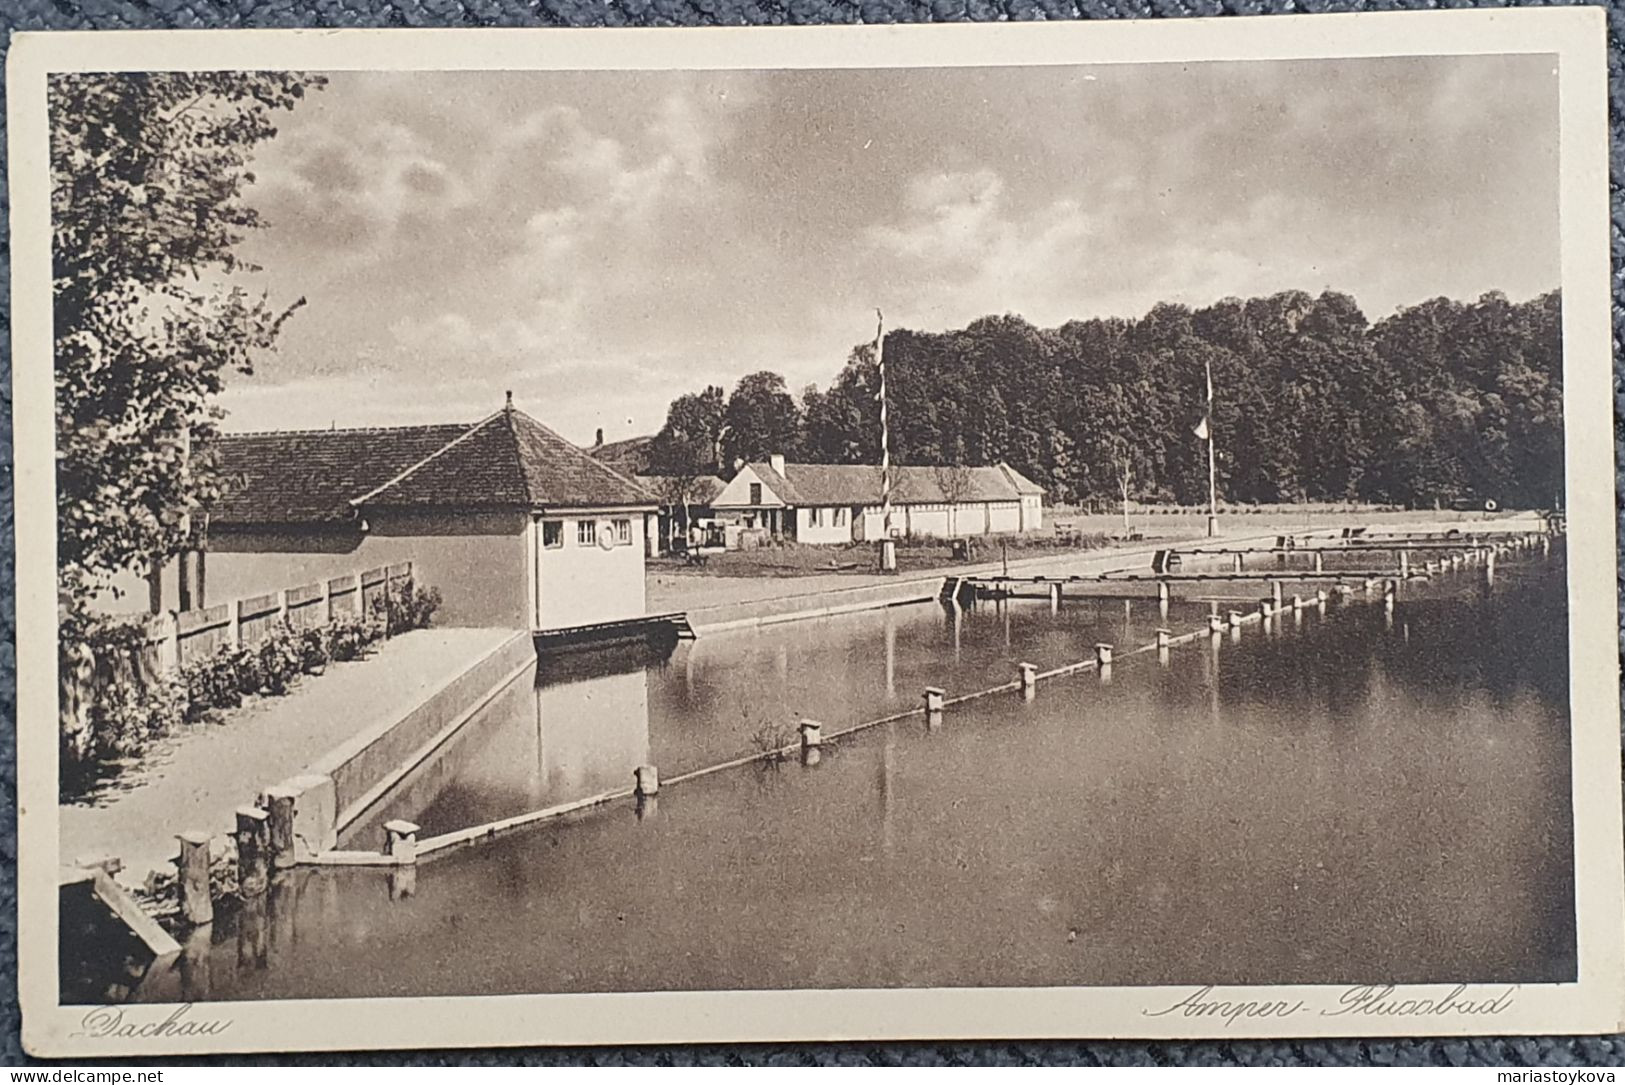 Dachau. Amper Flussbad. - Dachau